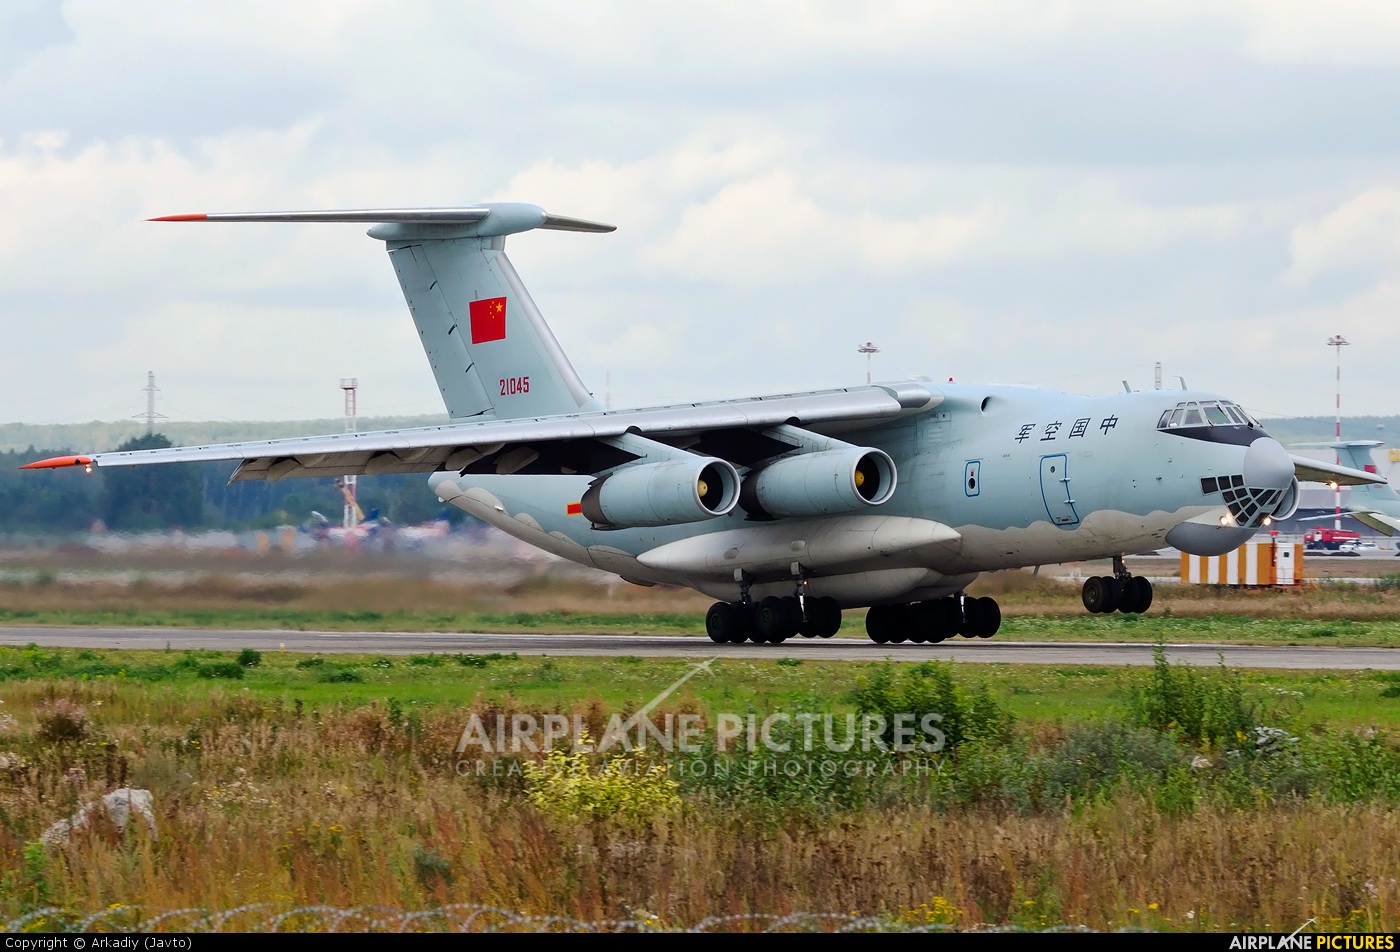 China - Air Force 21045 aircraft at Koltsovo - Ekaterinburg